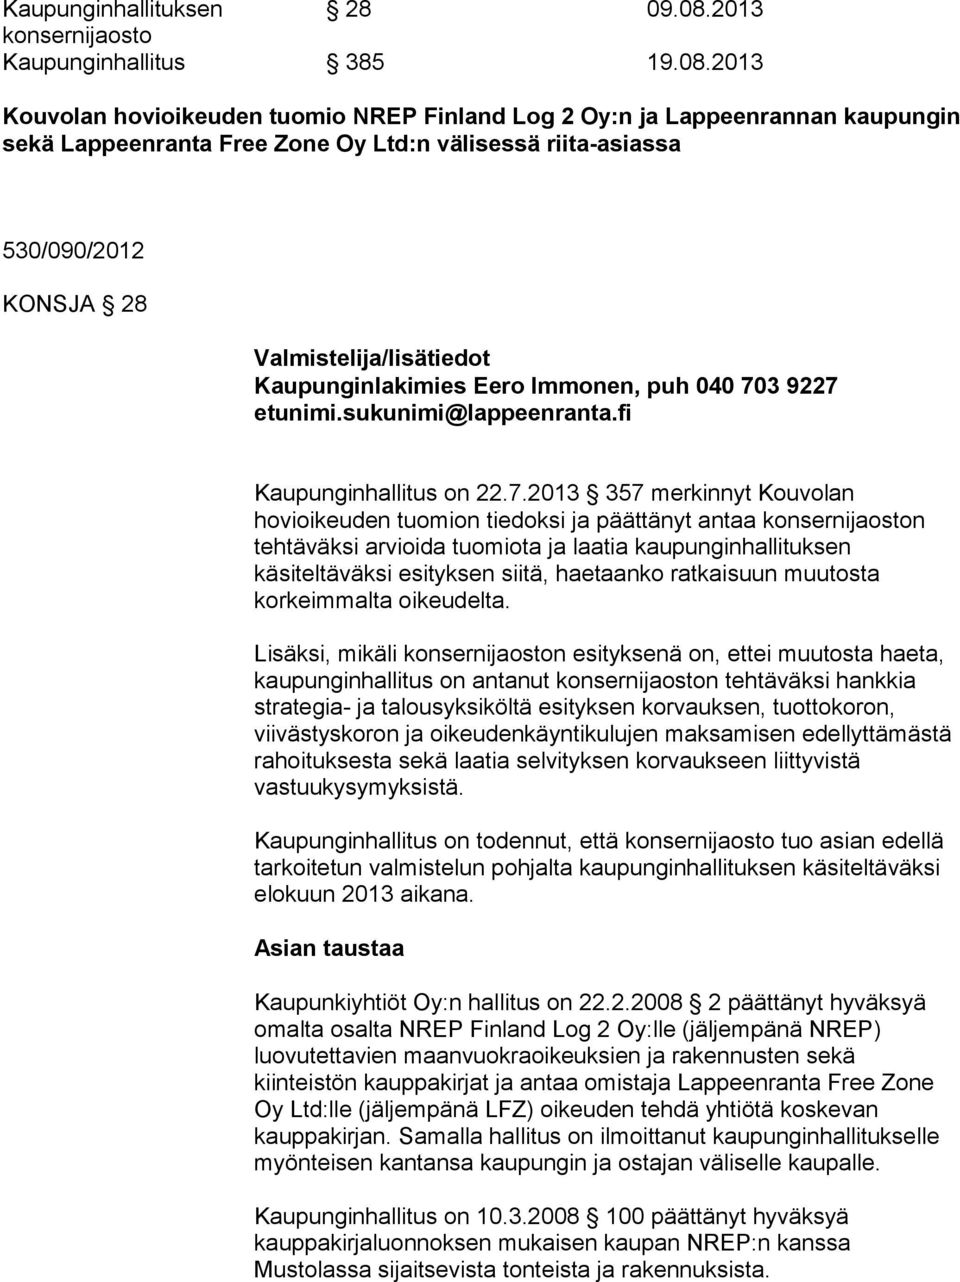 2013 Kouvolan hovioikeuden tuomio NREP Finland Log 2 Oy:n ja Lappeenrannan kaupungin sekä Lappeenranta Free Zone Oy Ltd:n välisessä riita-asiassa 530/090/2012 KONSJA 28 Valmistelija/lisätiedot